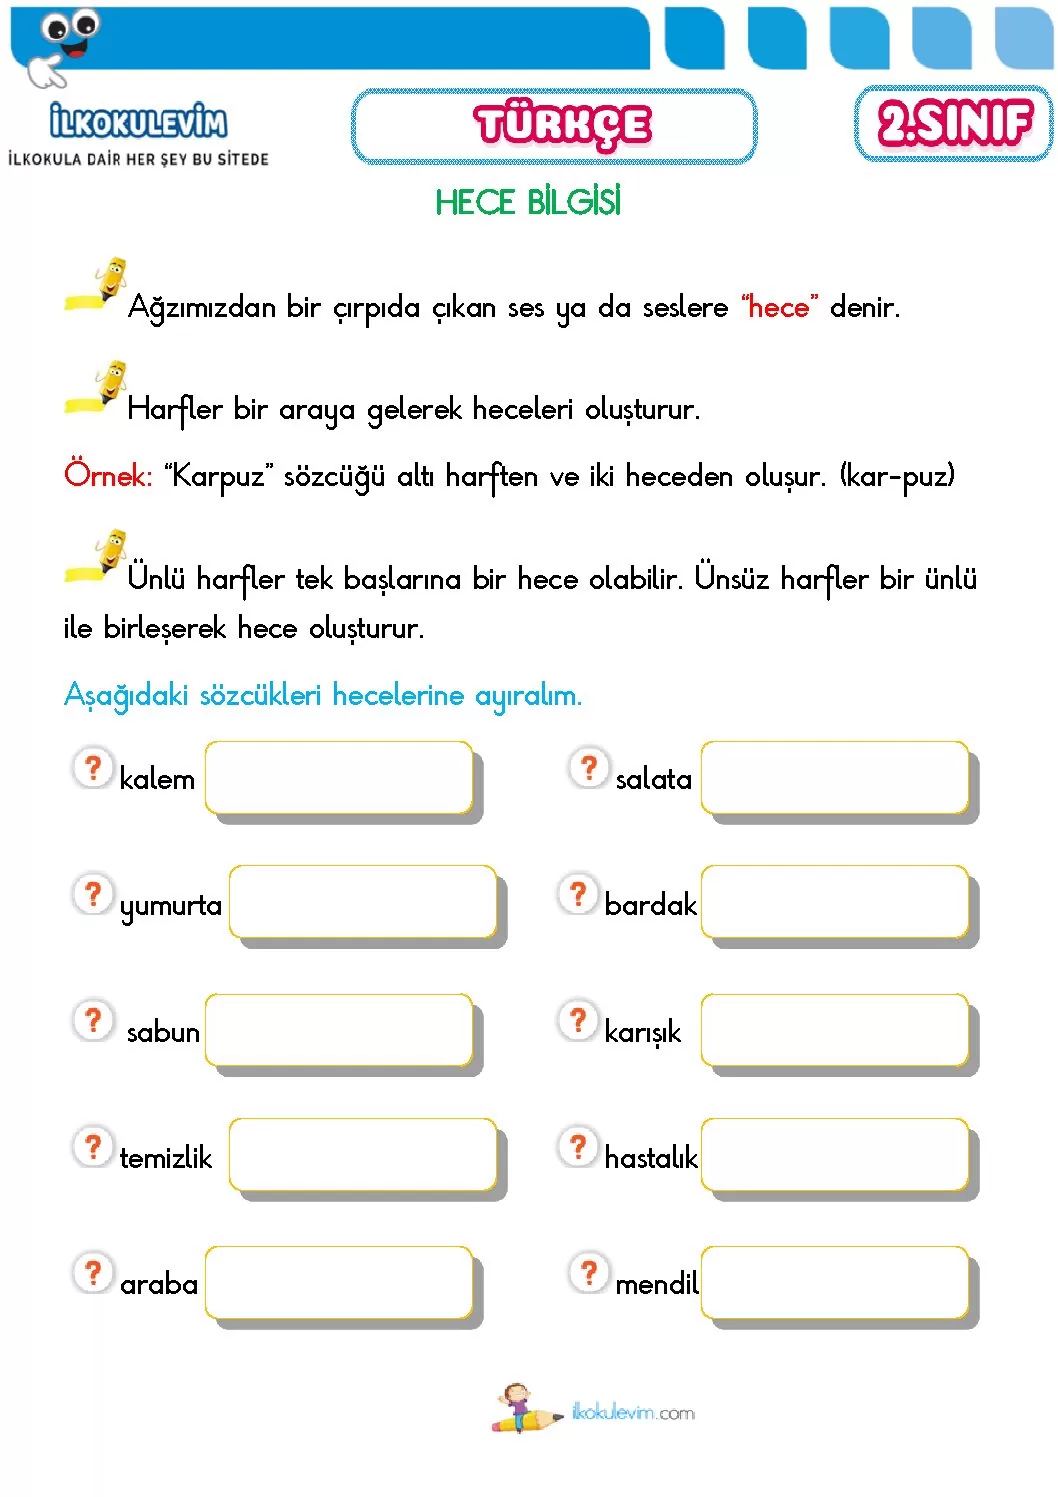 2 sinif turkce hece bilgisi etkinligi 1 pdf